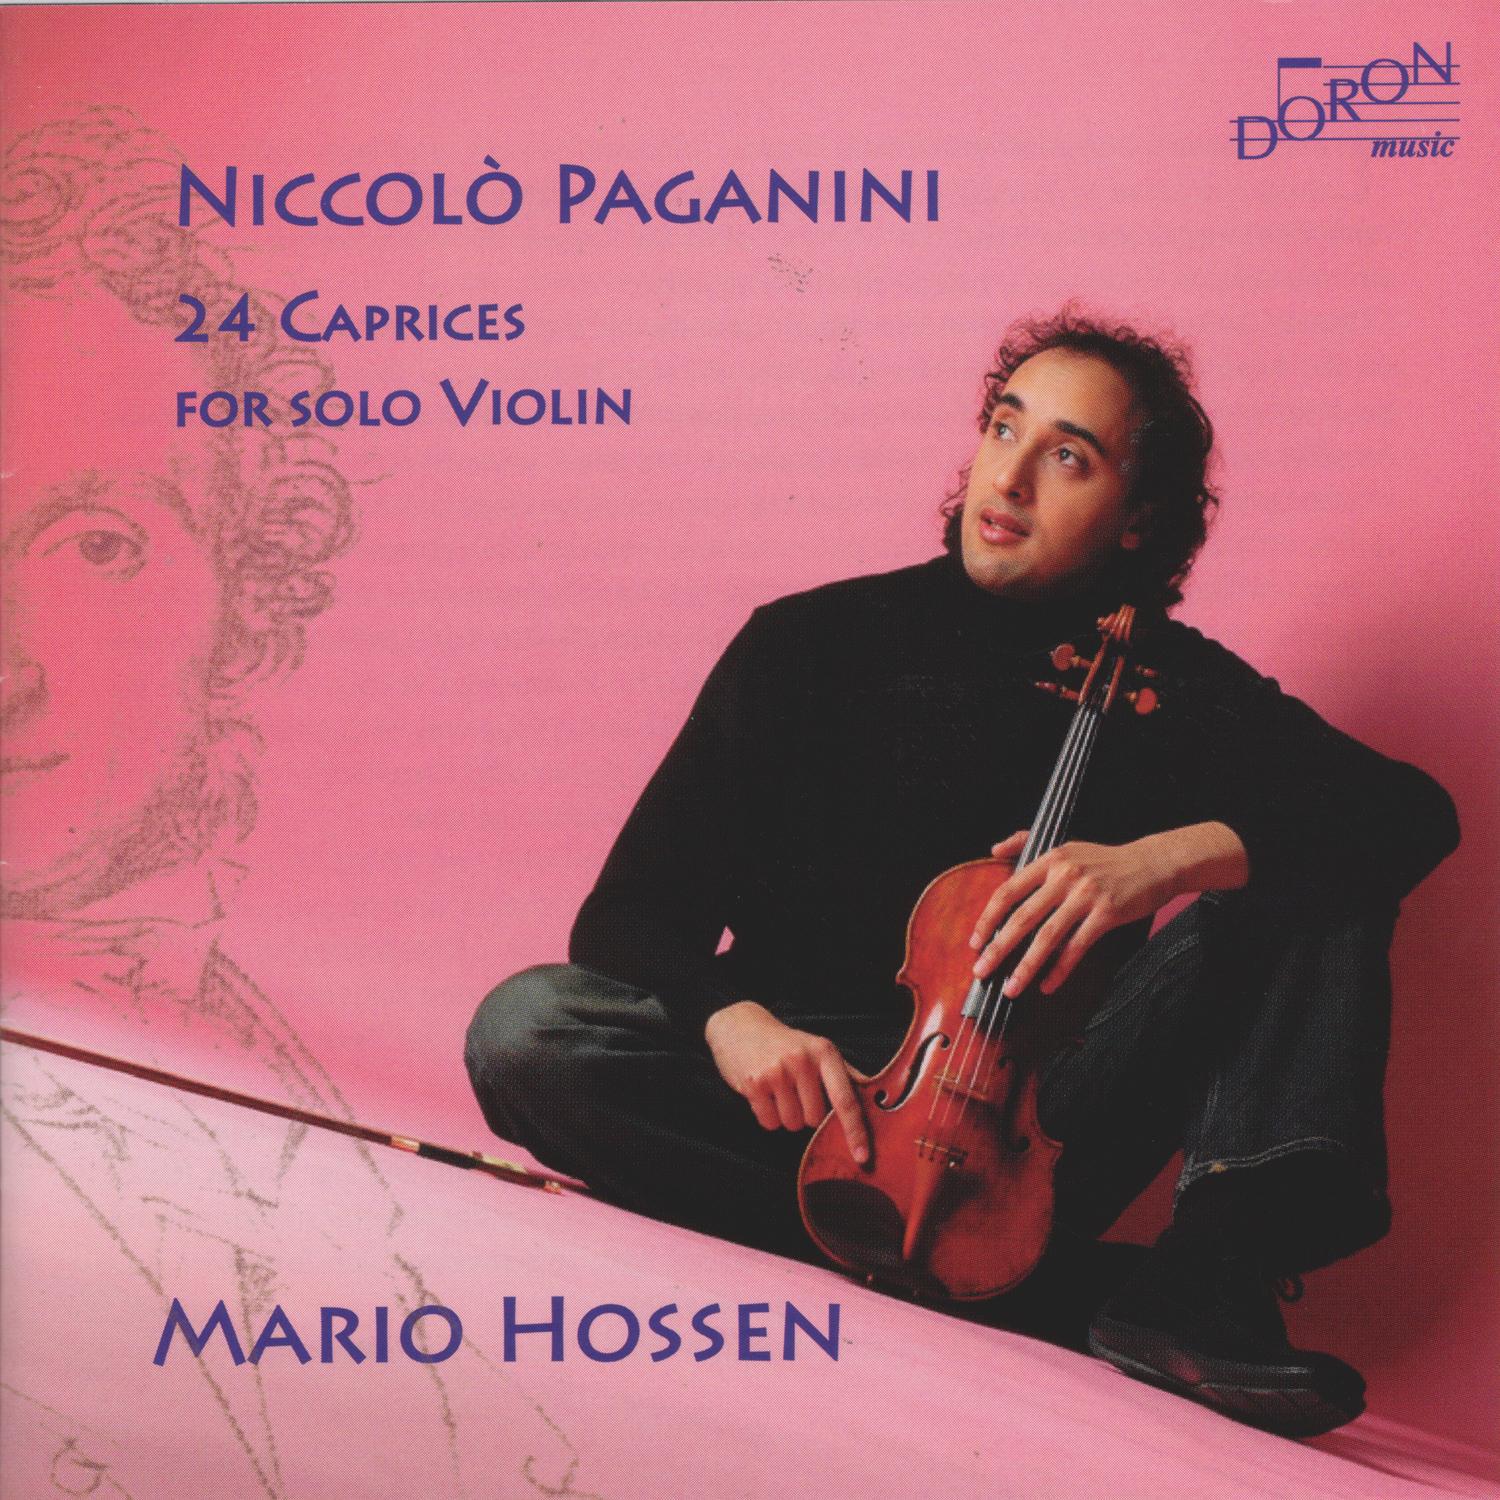 Niccolo Paganini: 24 Caprices for Solo Violin, Op. 1